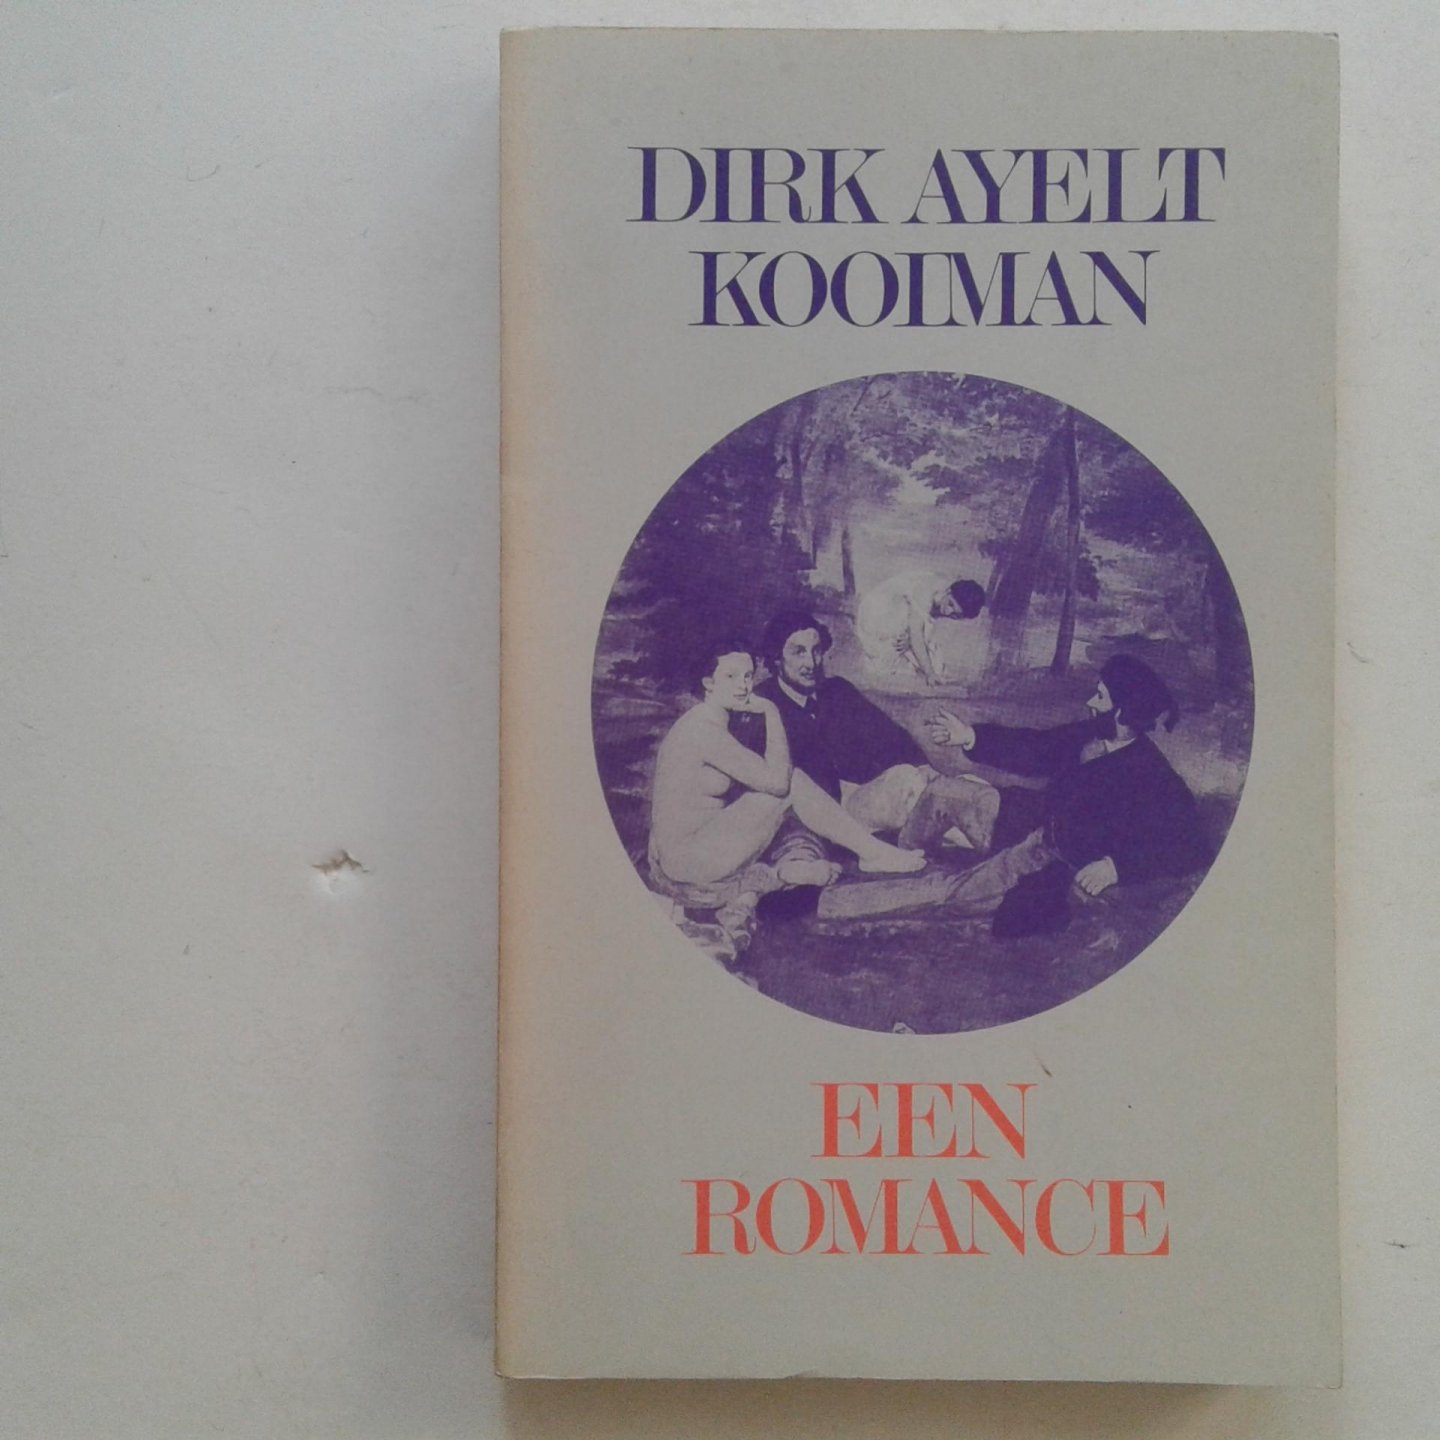 Kooiman, Dirk Ayelt - Dirk Ayelt Kooiman ; Een romance